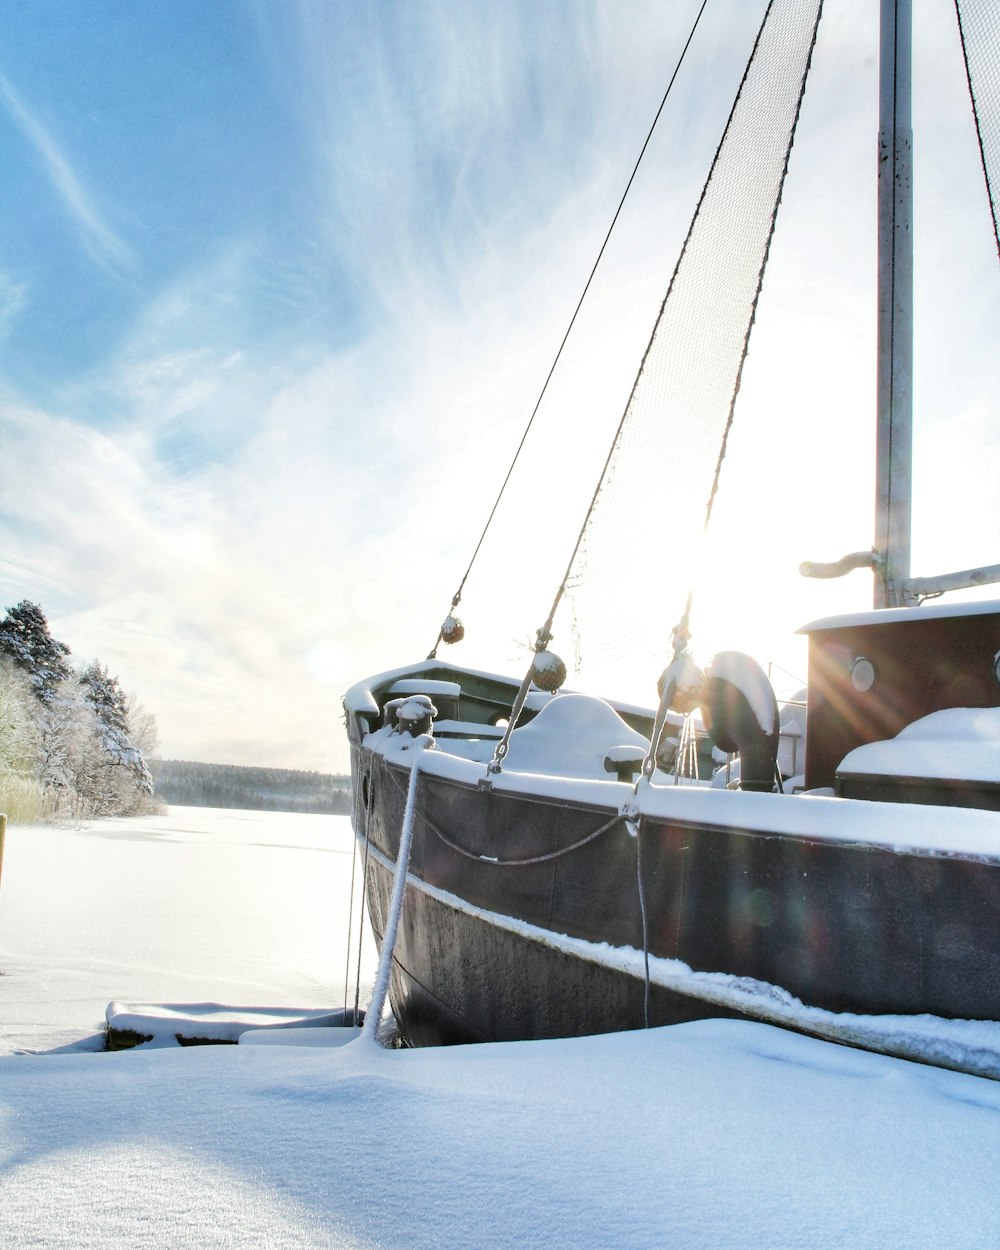 barco branco e marrom no solo coberto de neve durante o dia